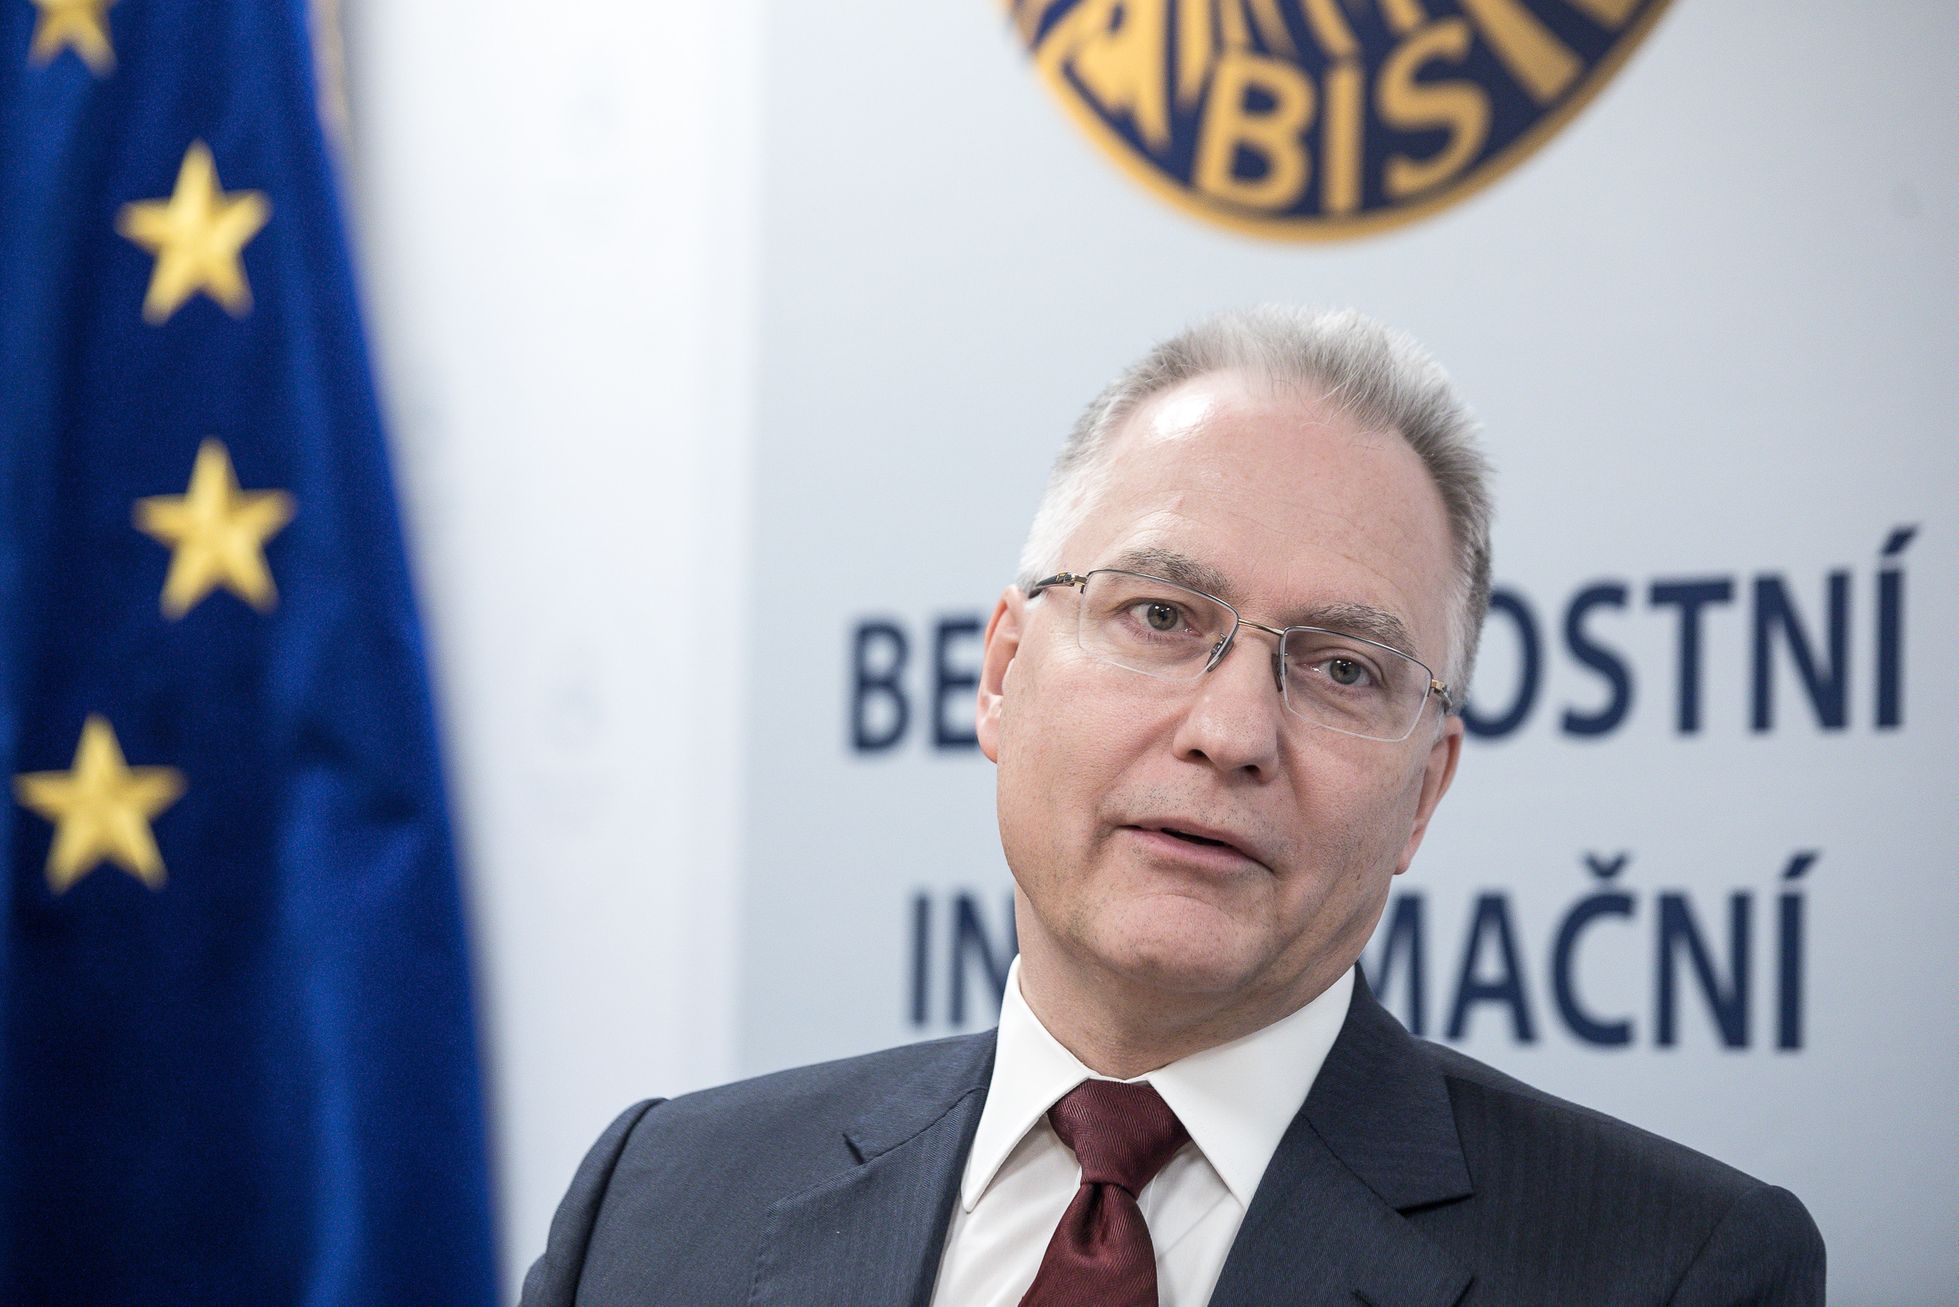 Michal Koudelka, ředitel Bezpečnostní informační služba, BIS